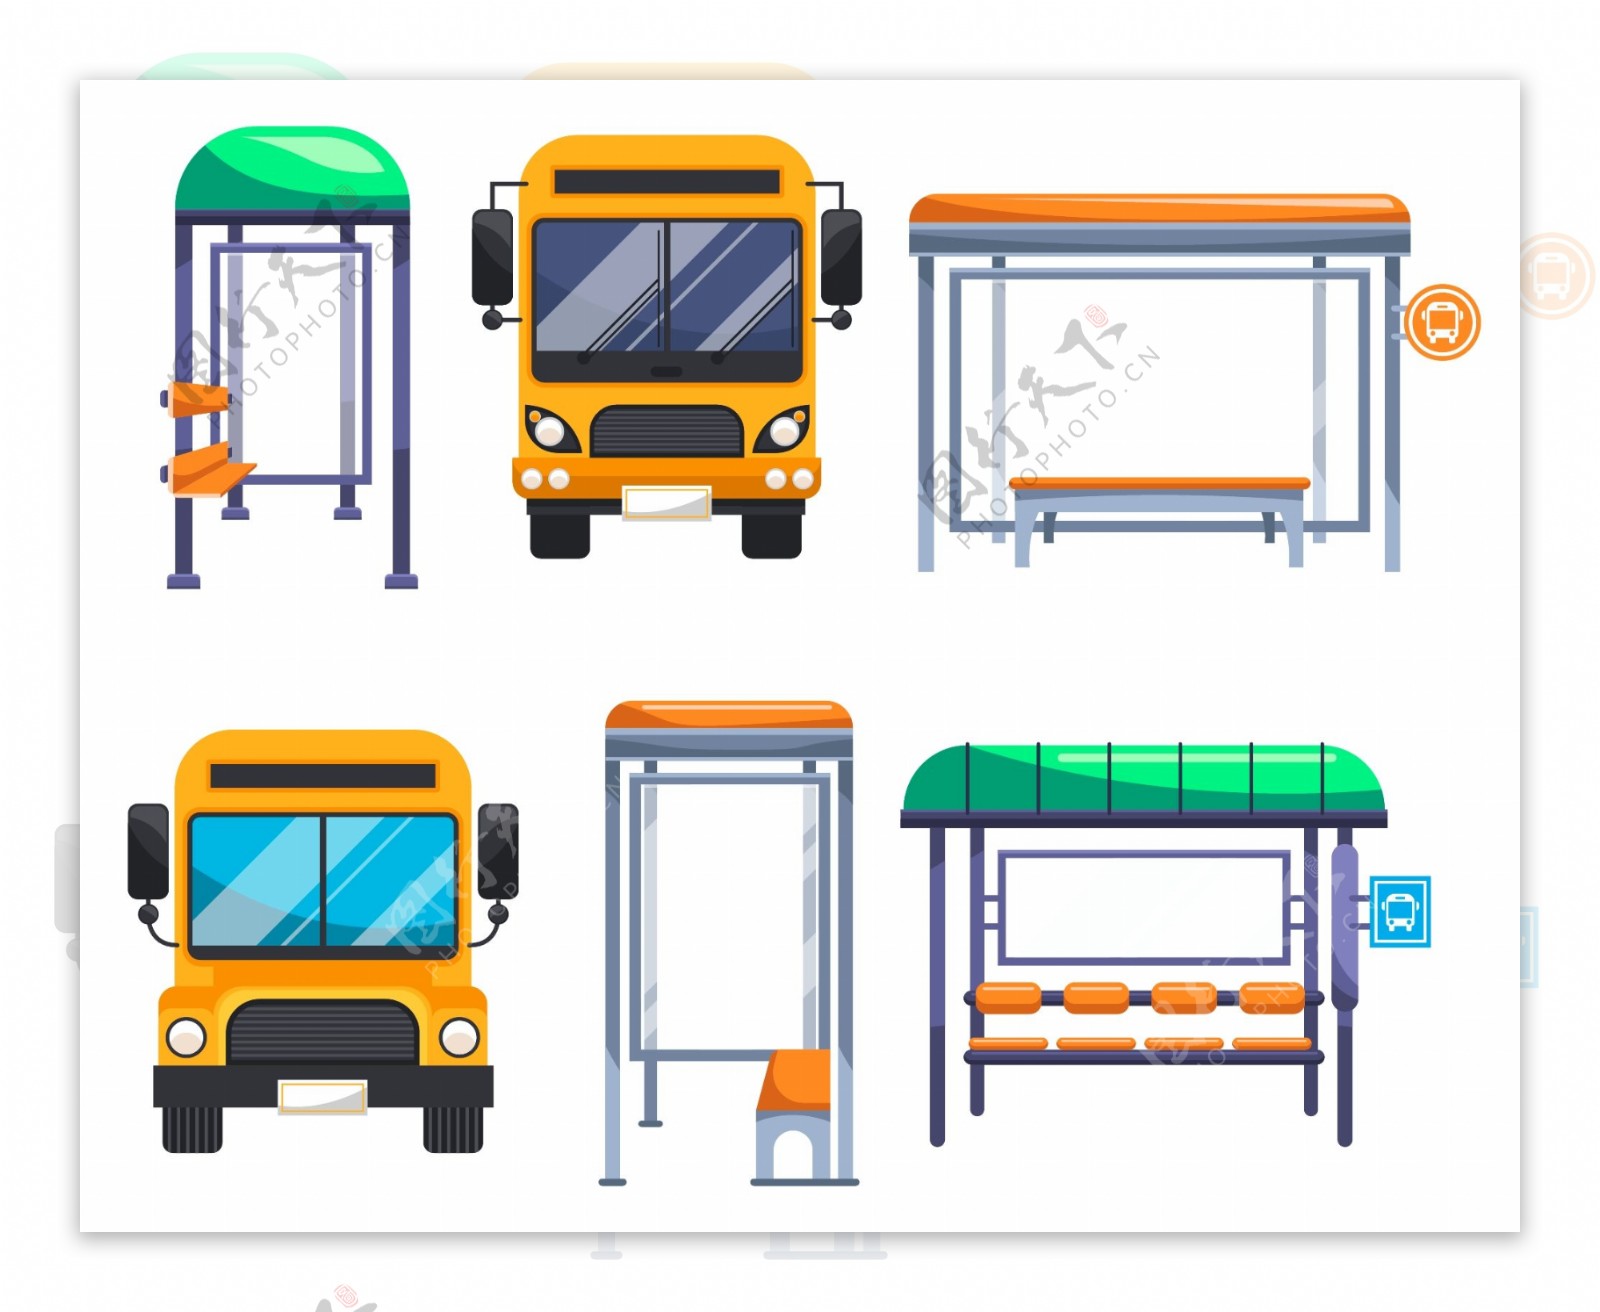 扁平化的公交车和站台素材